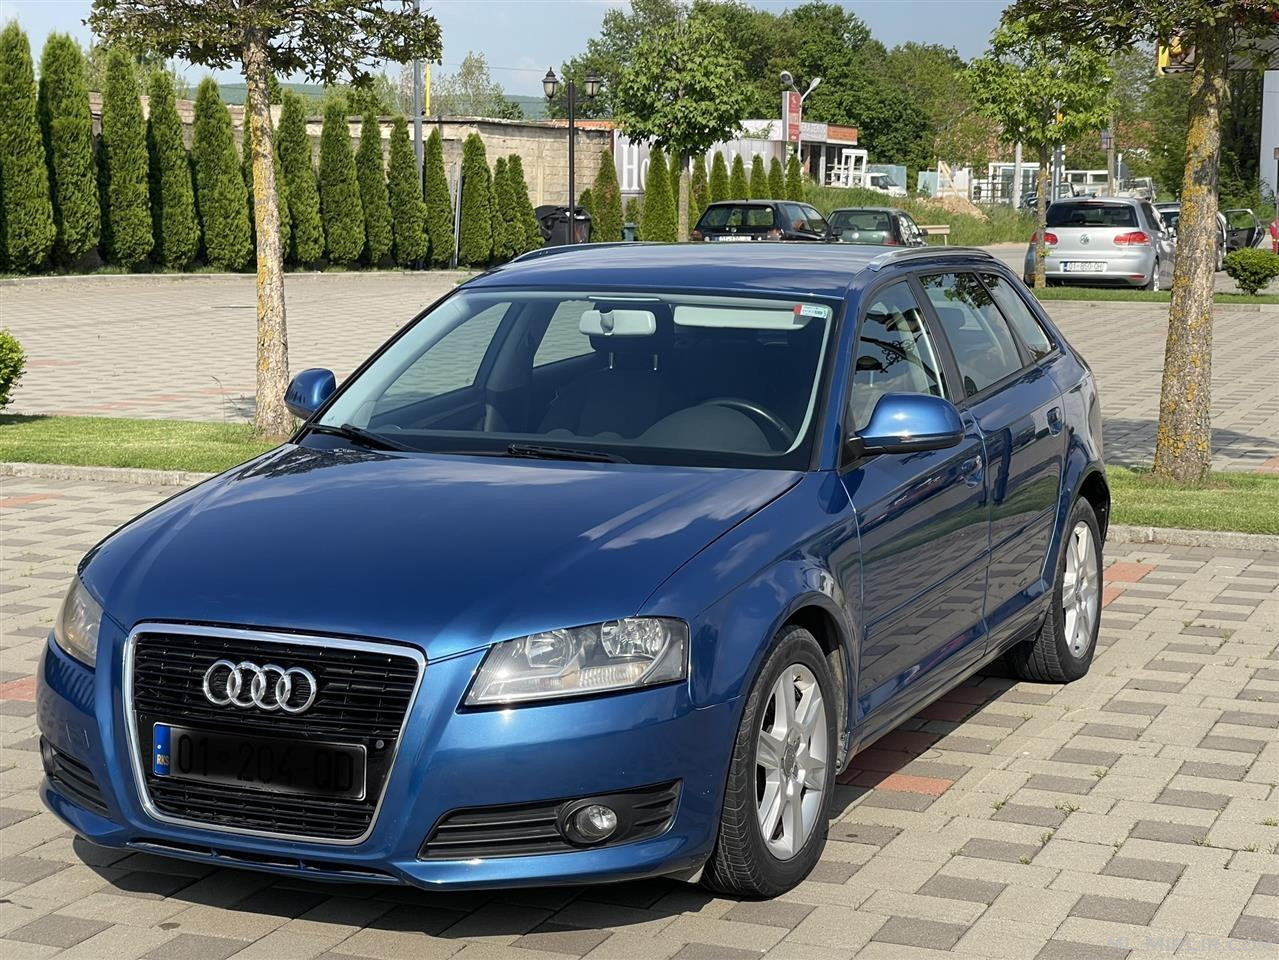 Audi A3 1.6 Automatik tiptronik rks 7 muaj 2011